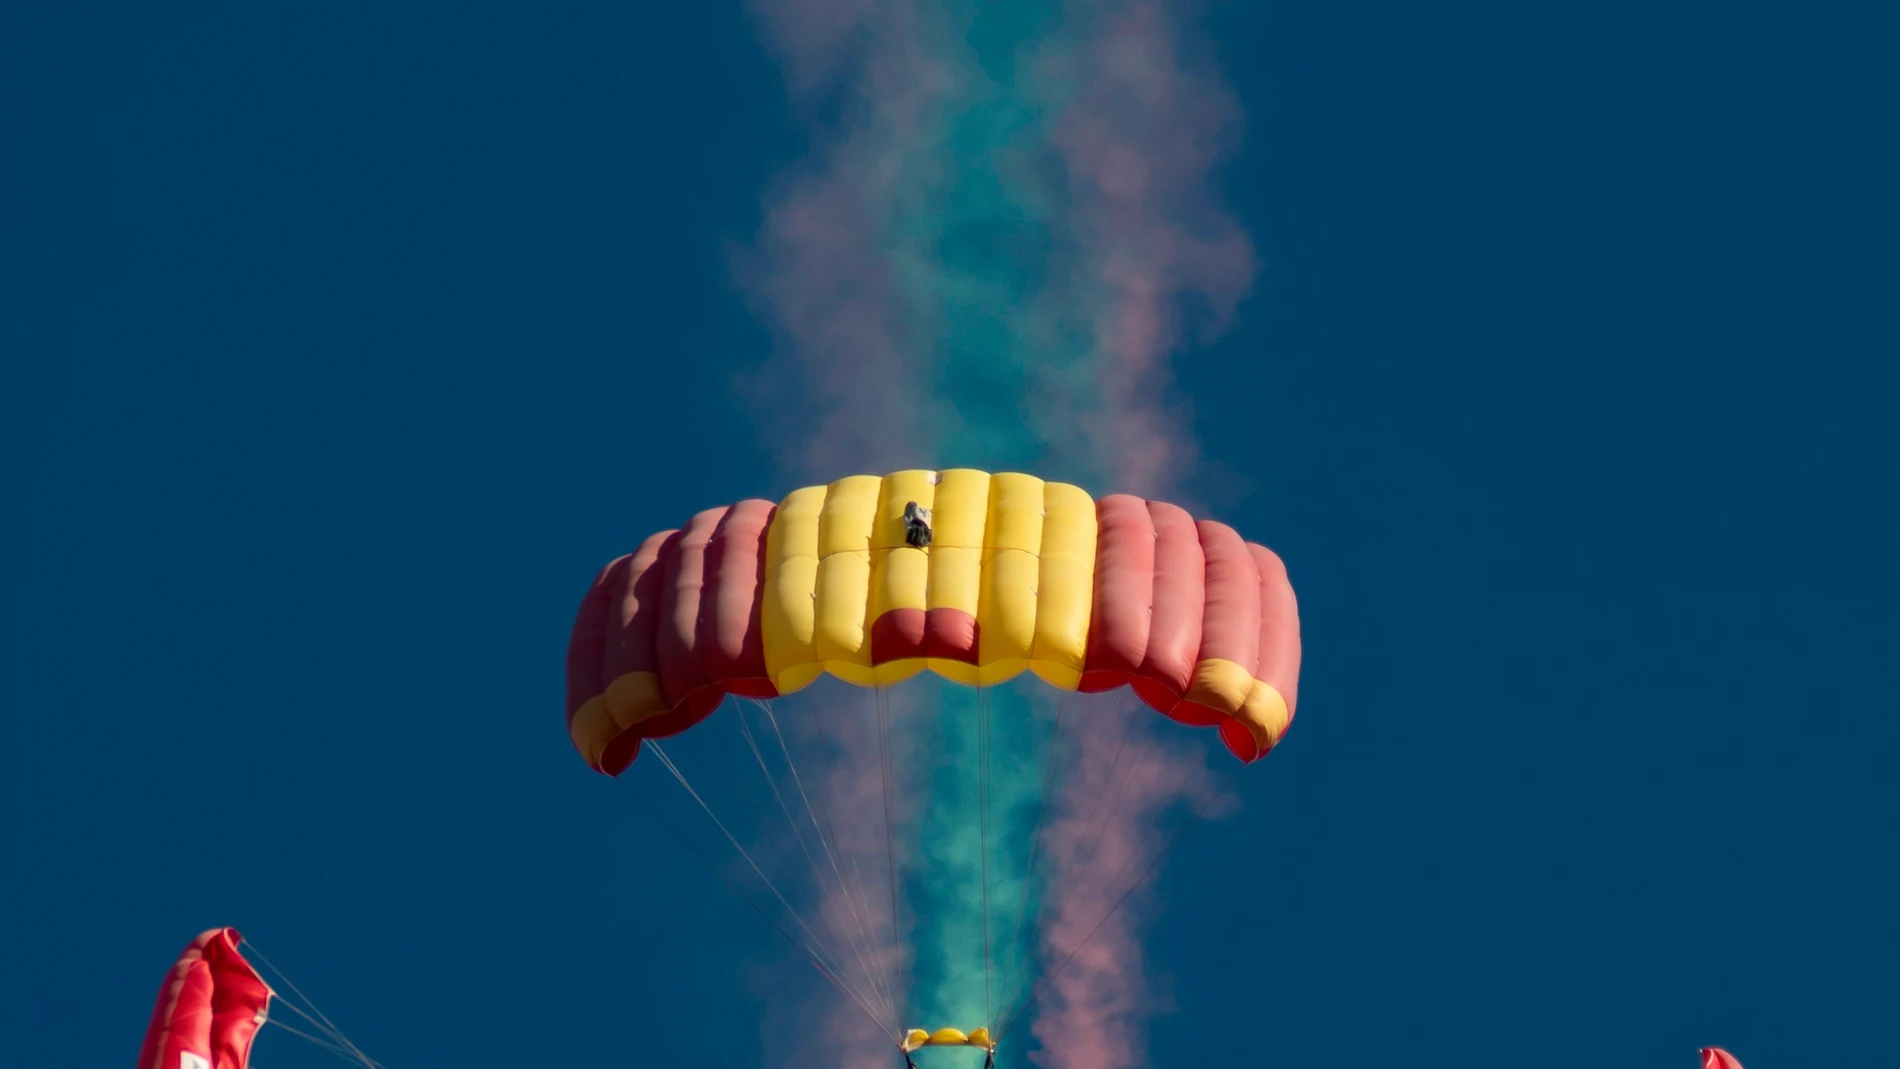 Paracaidistas sobrevuelan el Aeródromo militar de Tablada durante la exhibición aeronáutica